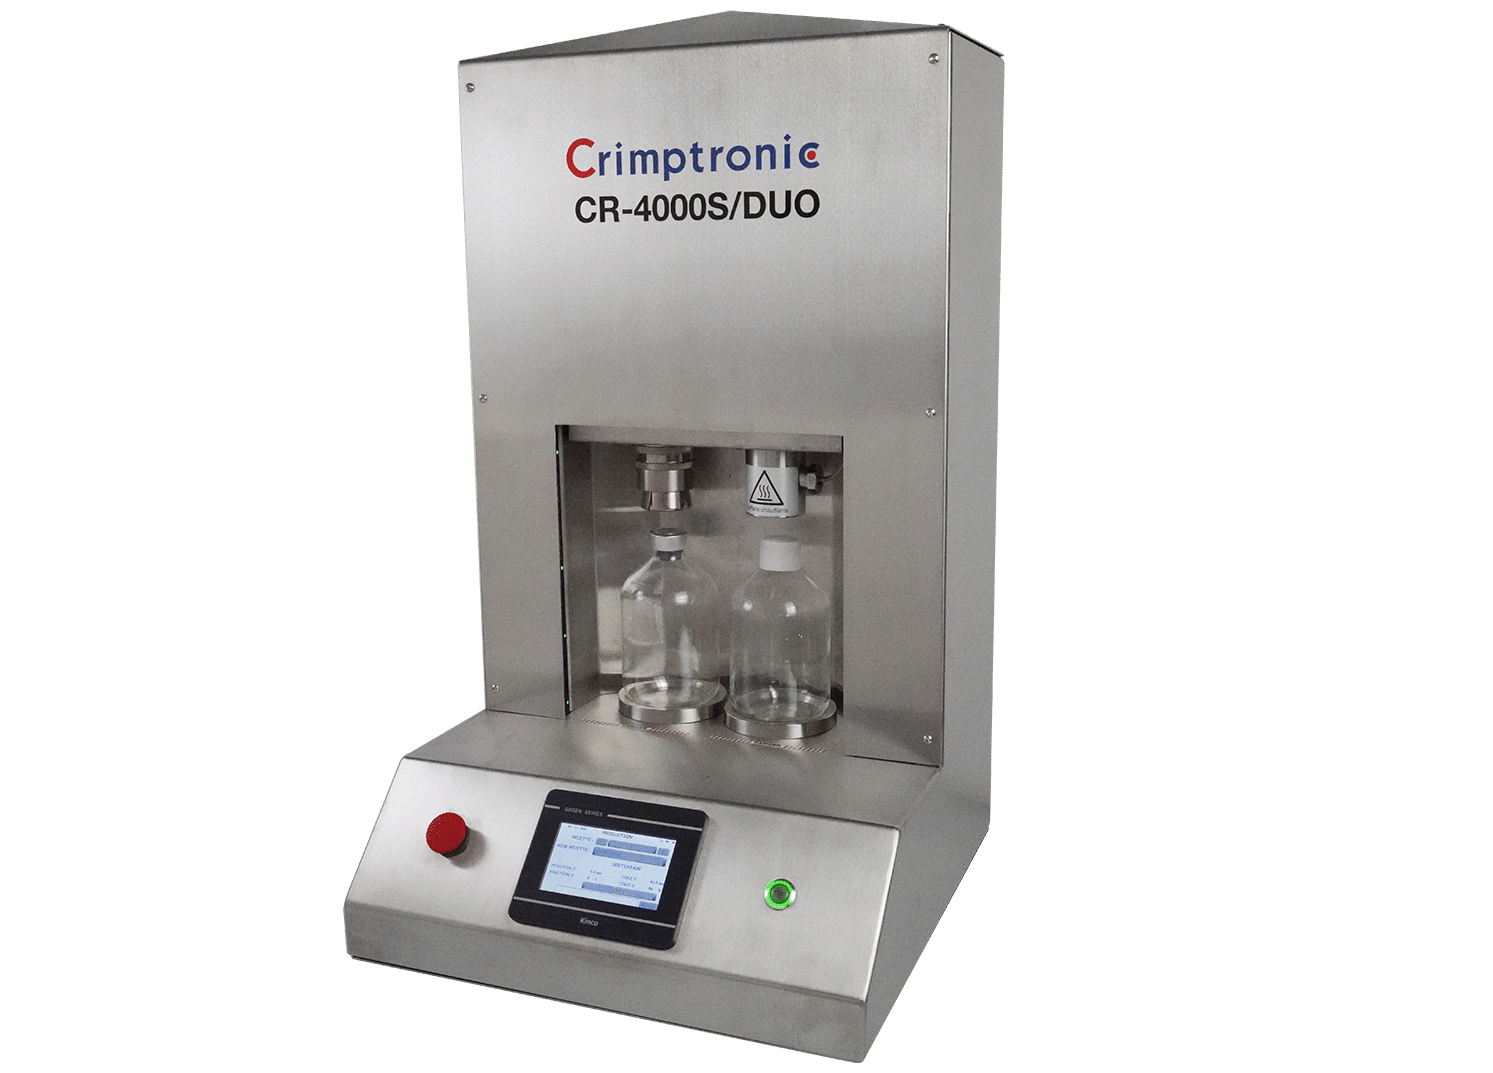 Sertisseuse et thermoformeuse électrique inox pour le laboratoire : CR-4000S/DUO